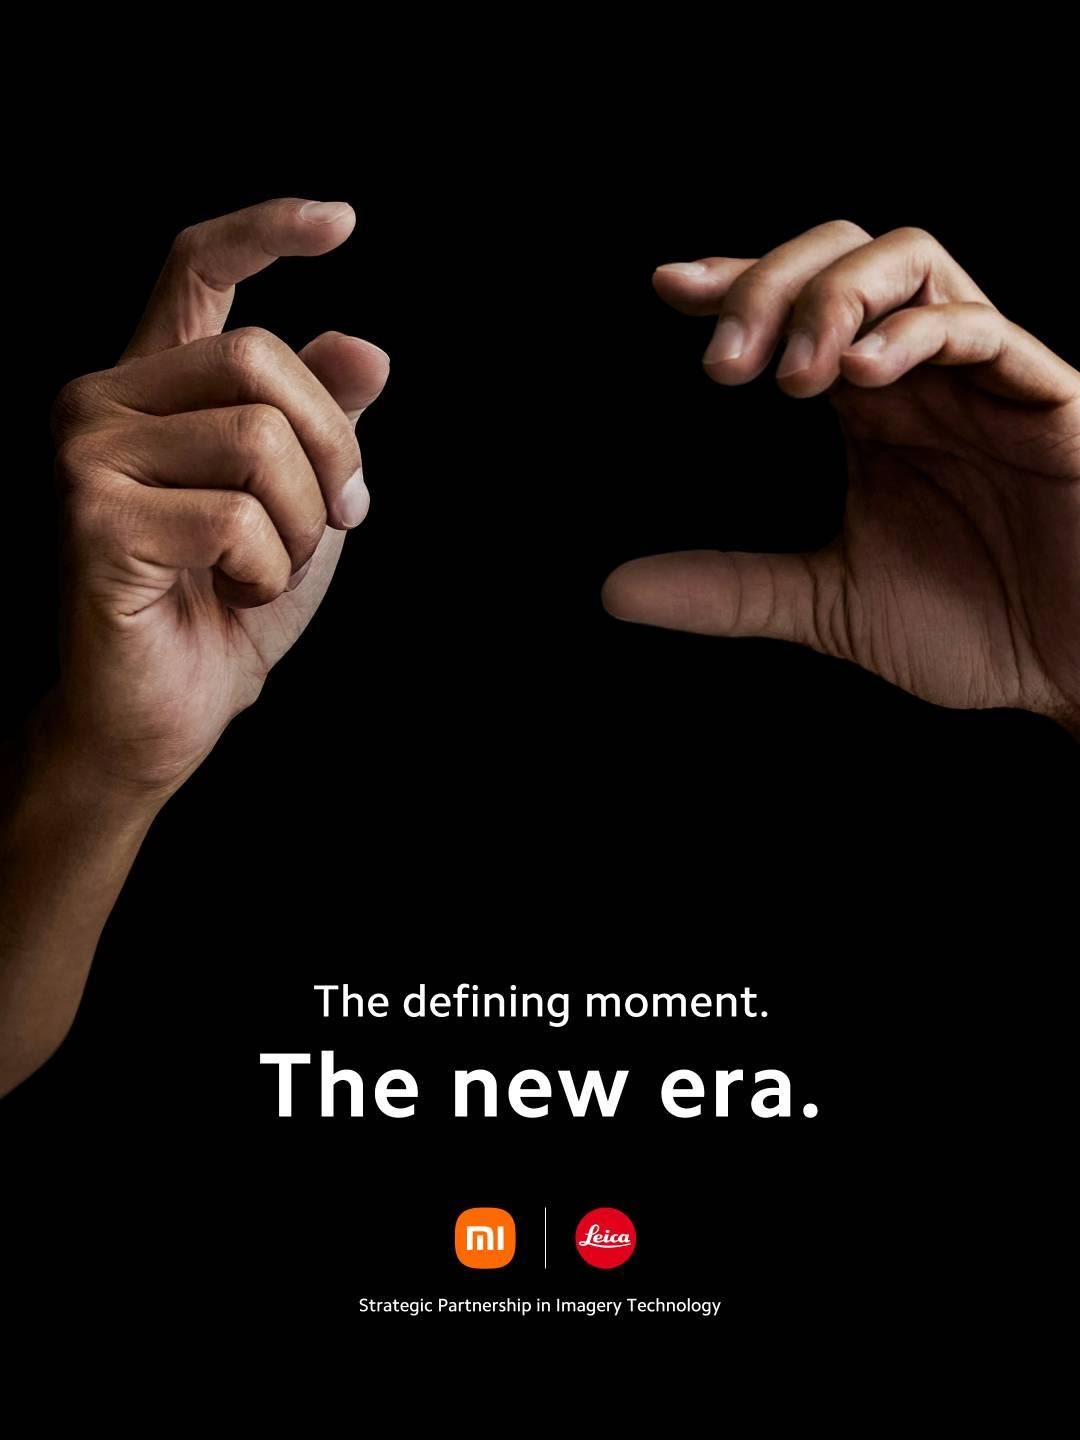 Xiaomi The new era